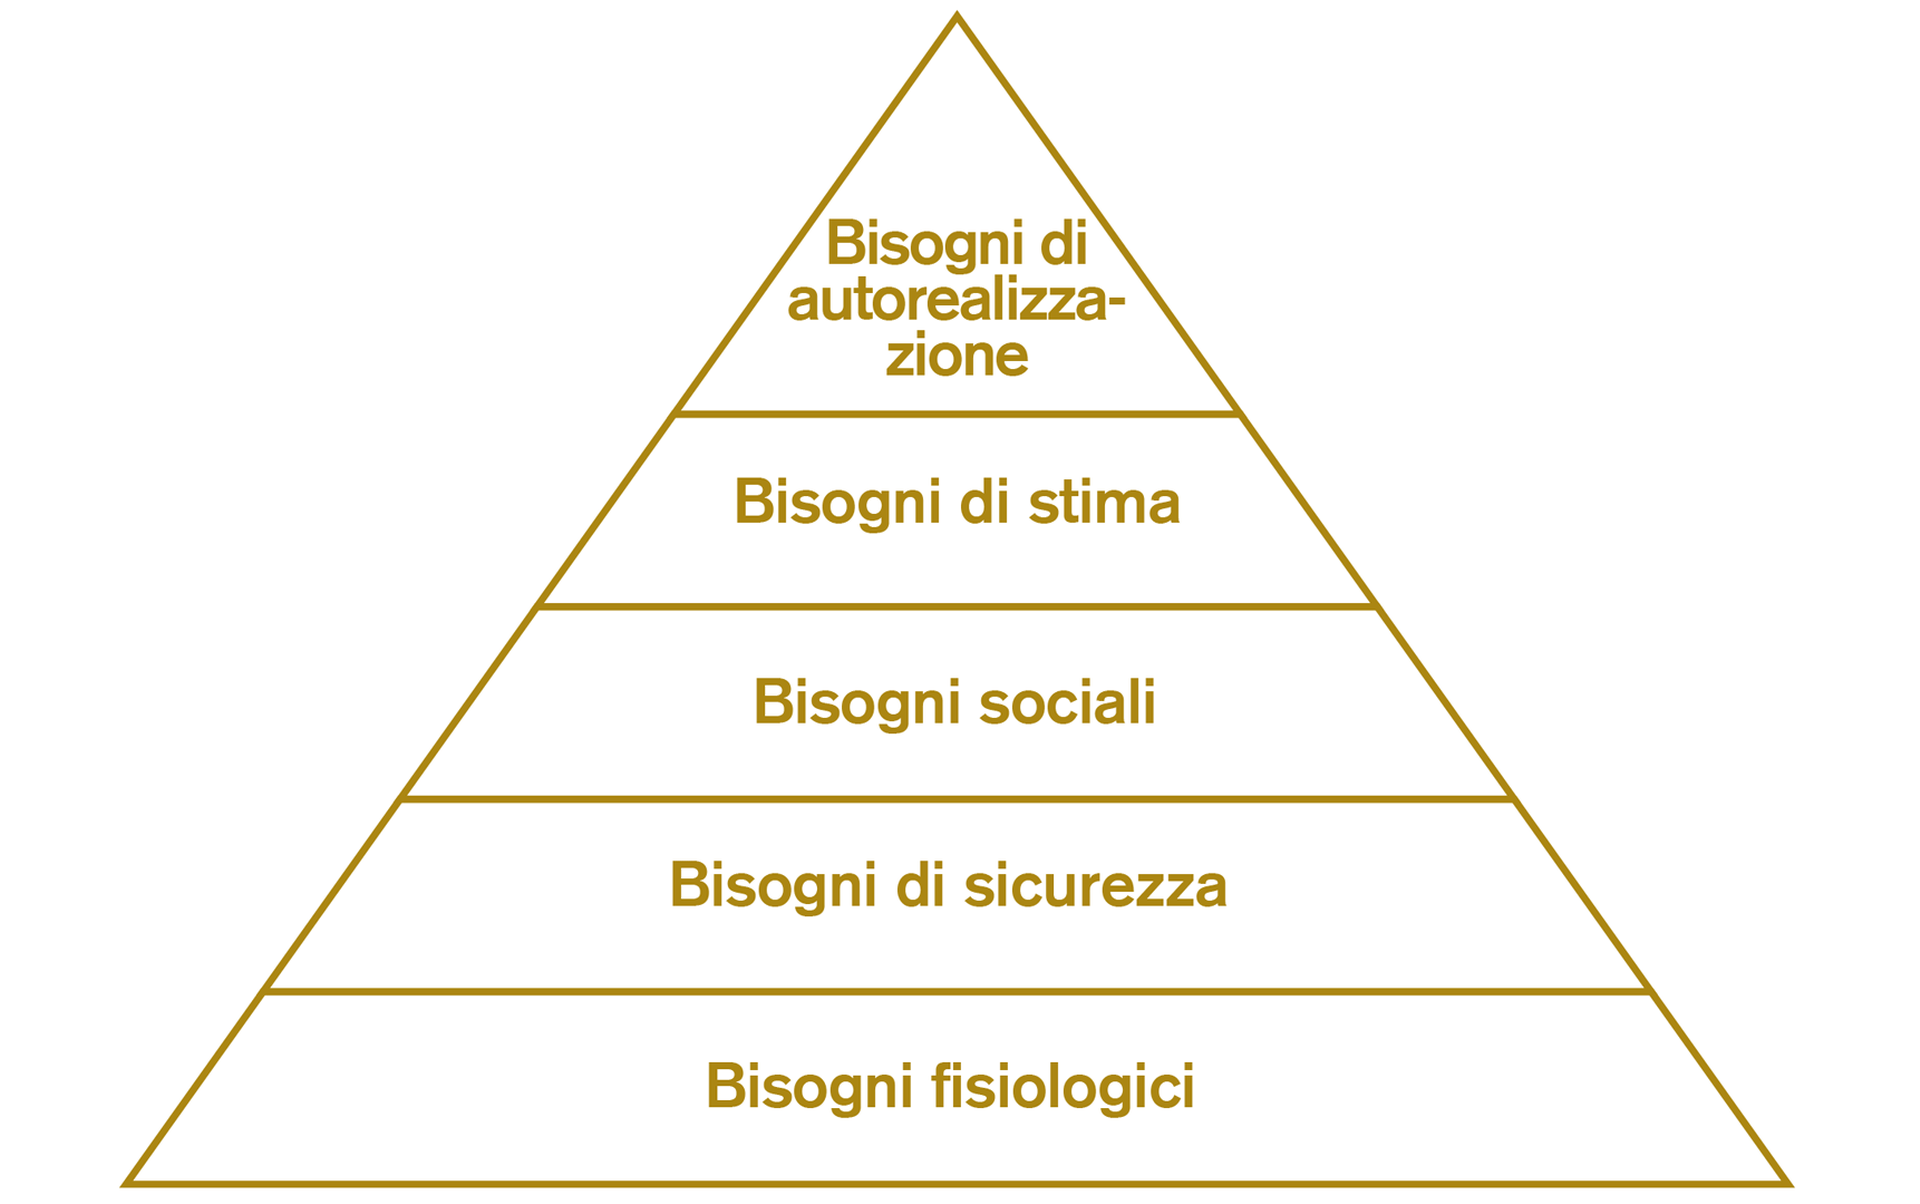 La piramide di Maslow dei bisogni umani (1943)